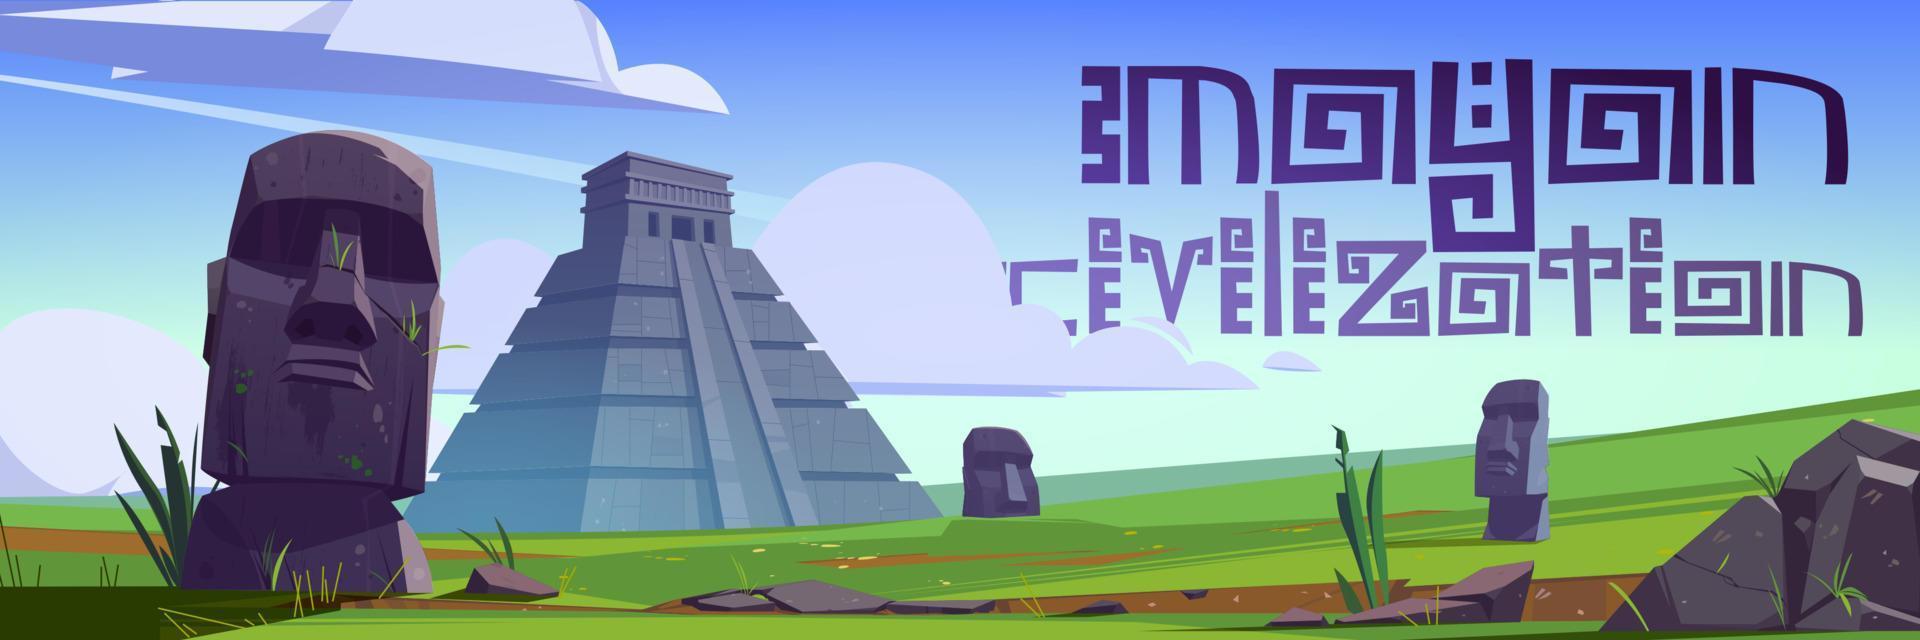 Wahrzeichen der Maya-Zivilisation und Moai-Statuen vektor